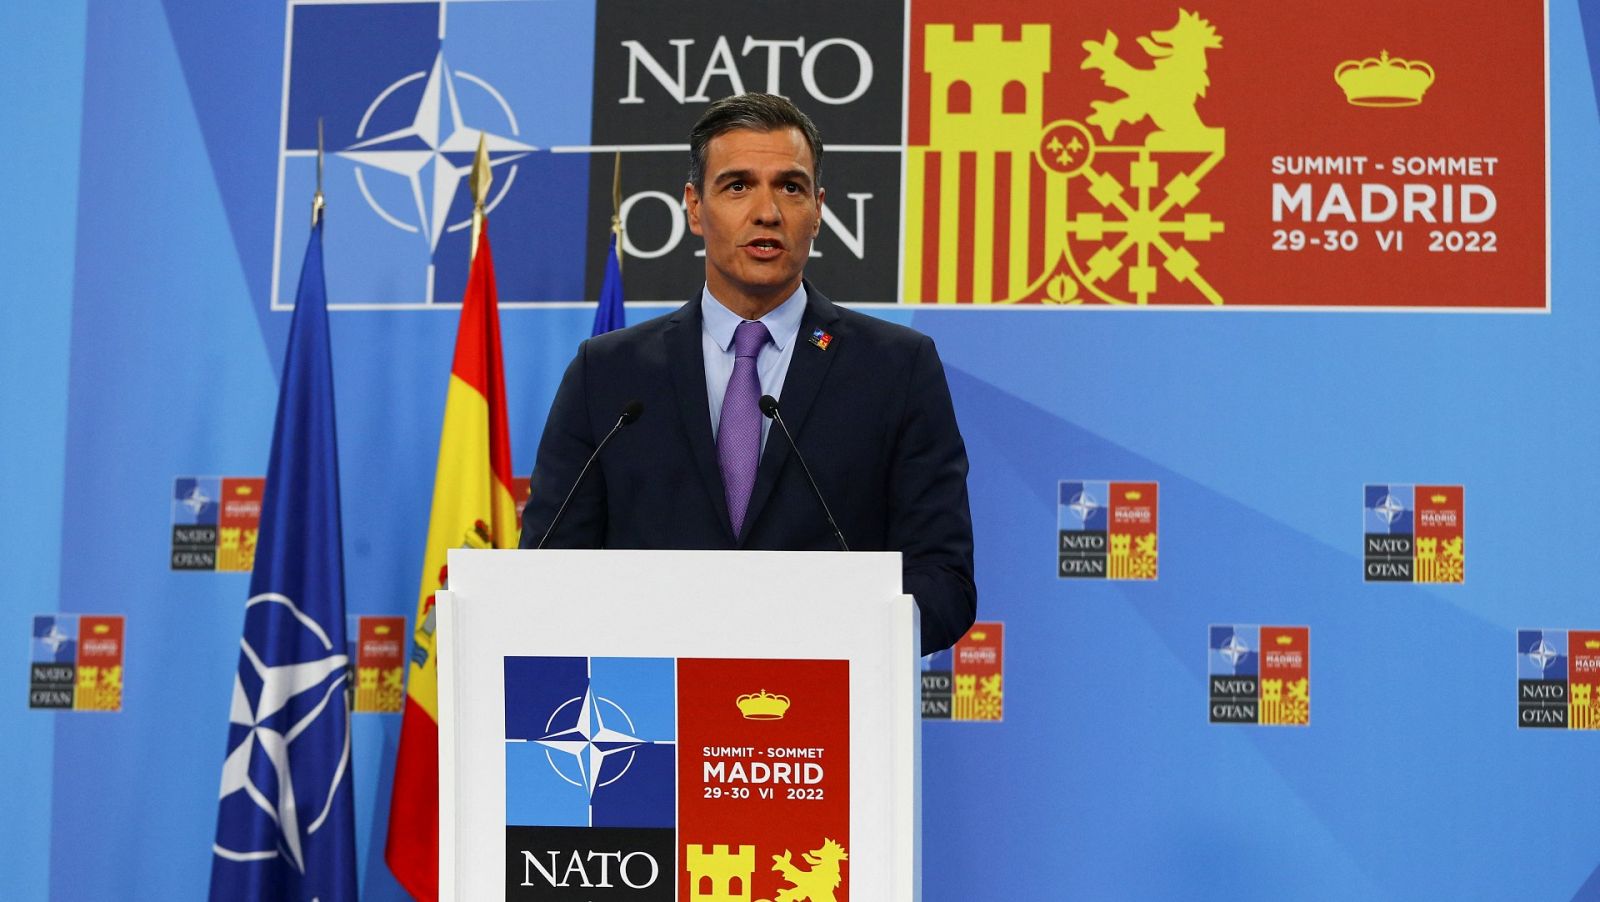 Sánchez destaca la "unidad" y "fortaleza" de la OTAN al término de la cumbre y el acuerdo "histórico" para sumar a Suecia y Finlandia